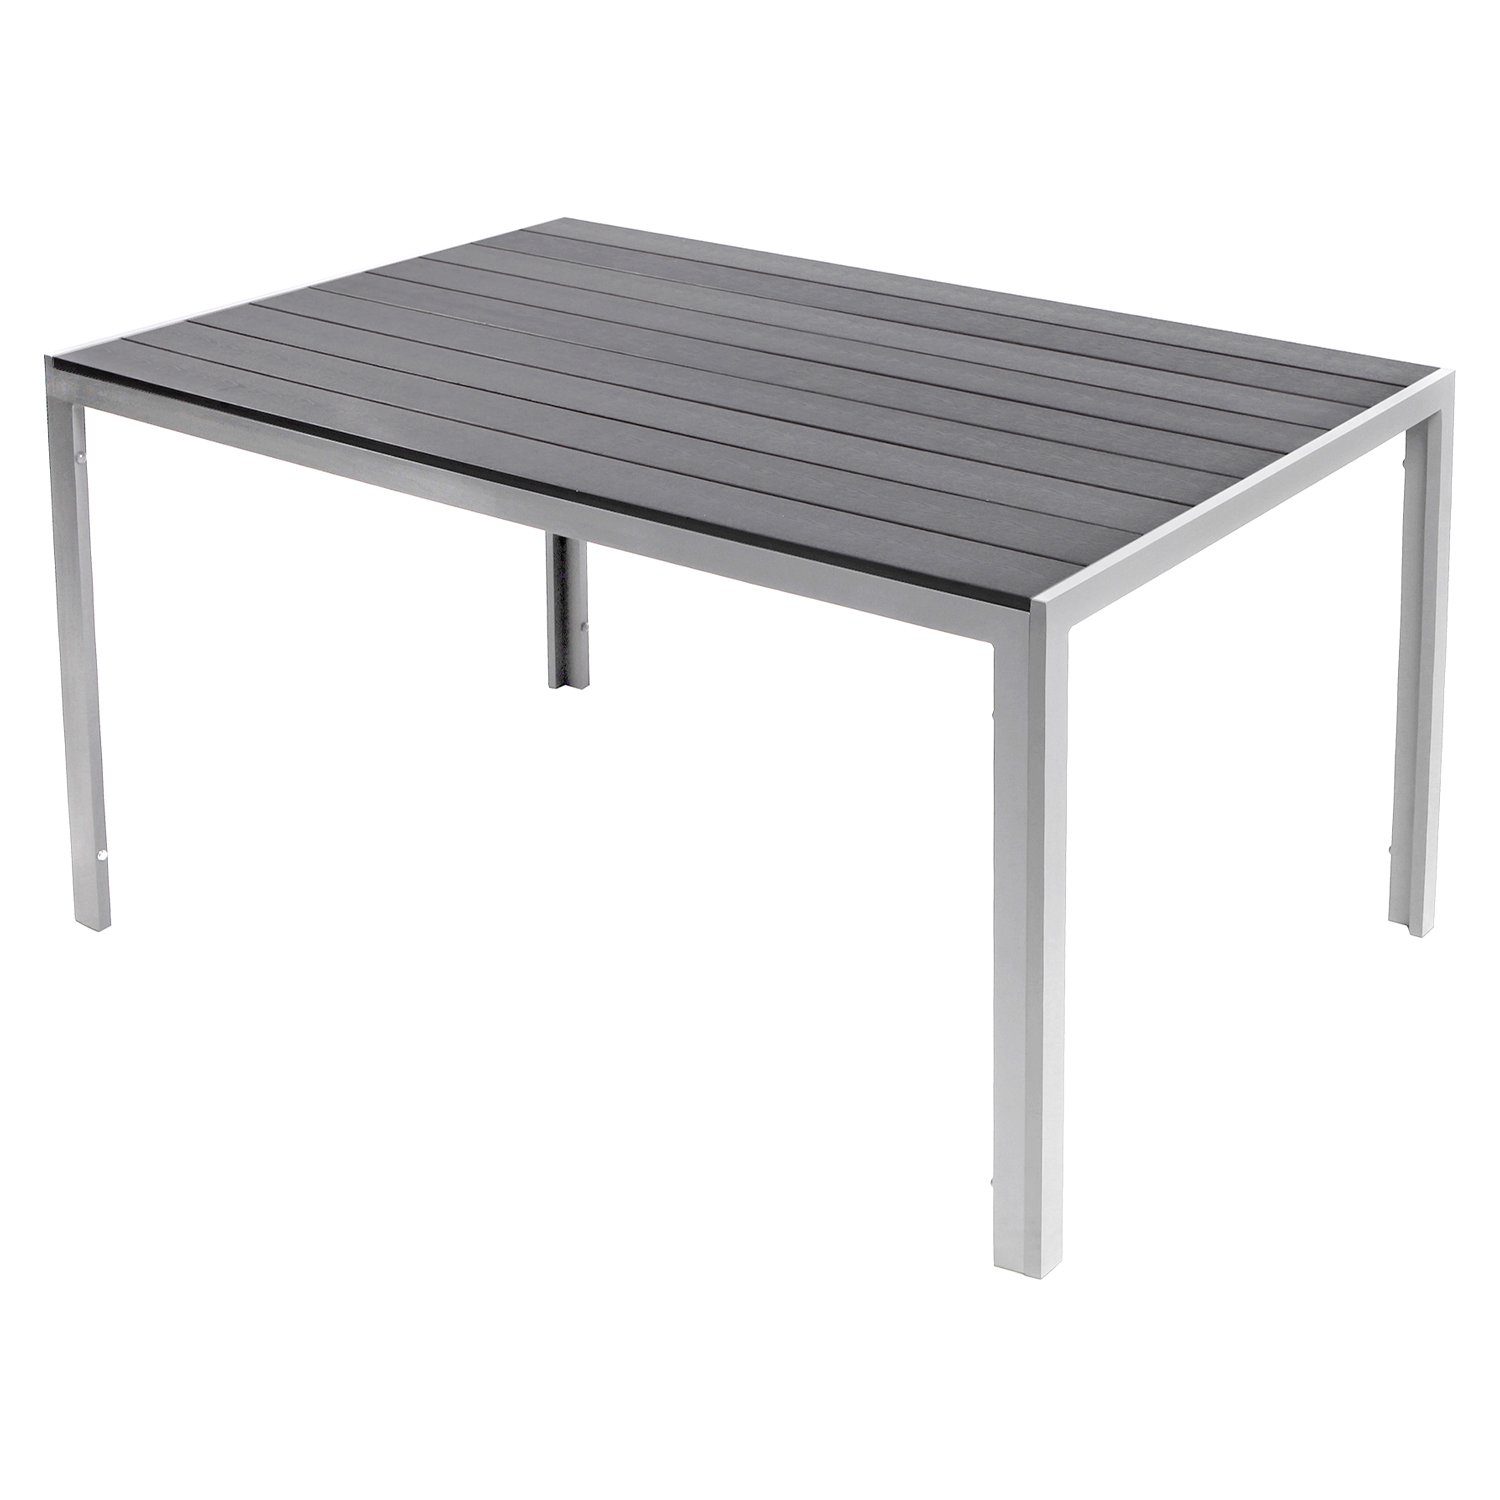 Mojawo Küchentisch XL Non-Wood Gartentisch Aluminium Silber / grau 180x90cm